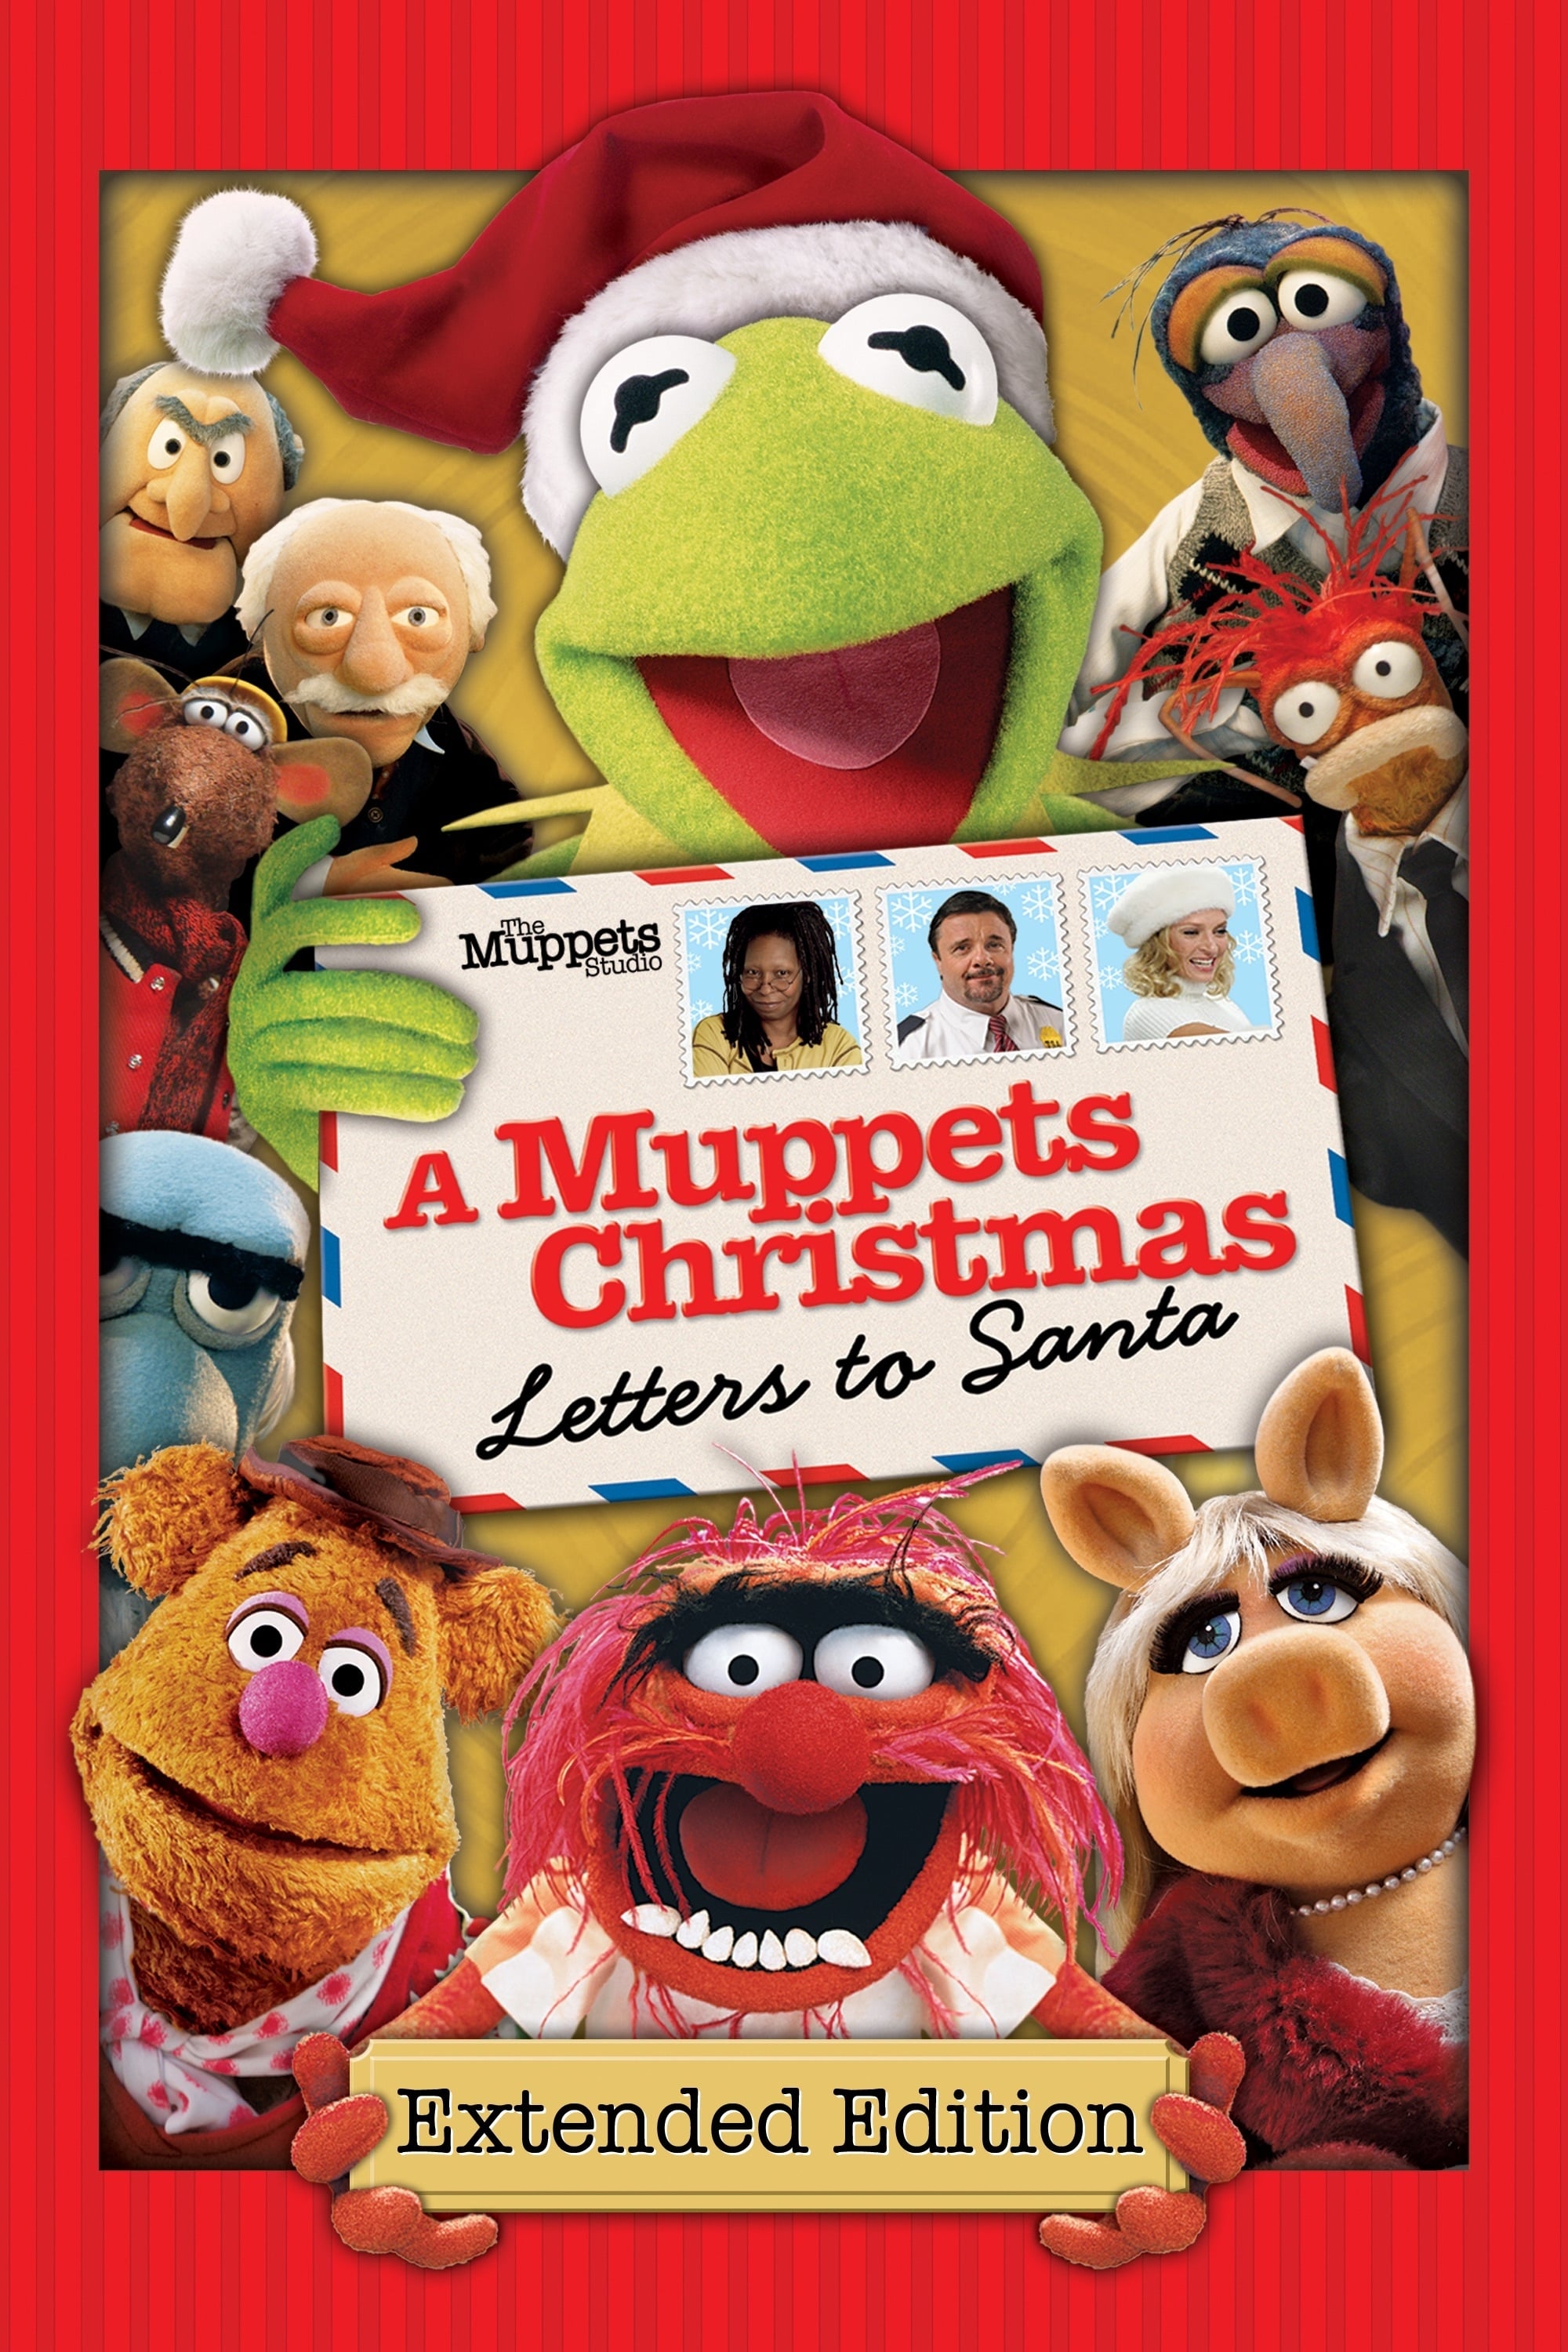 Caratula de A MUPPETS CHRISTMAS LETTERS TO SANTA (Los Muppets en Navidad Cartas a Santa Claus/ LOS TELEÑECOS EN NAVIDAD CARTAS A SANTA) 